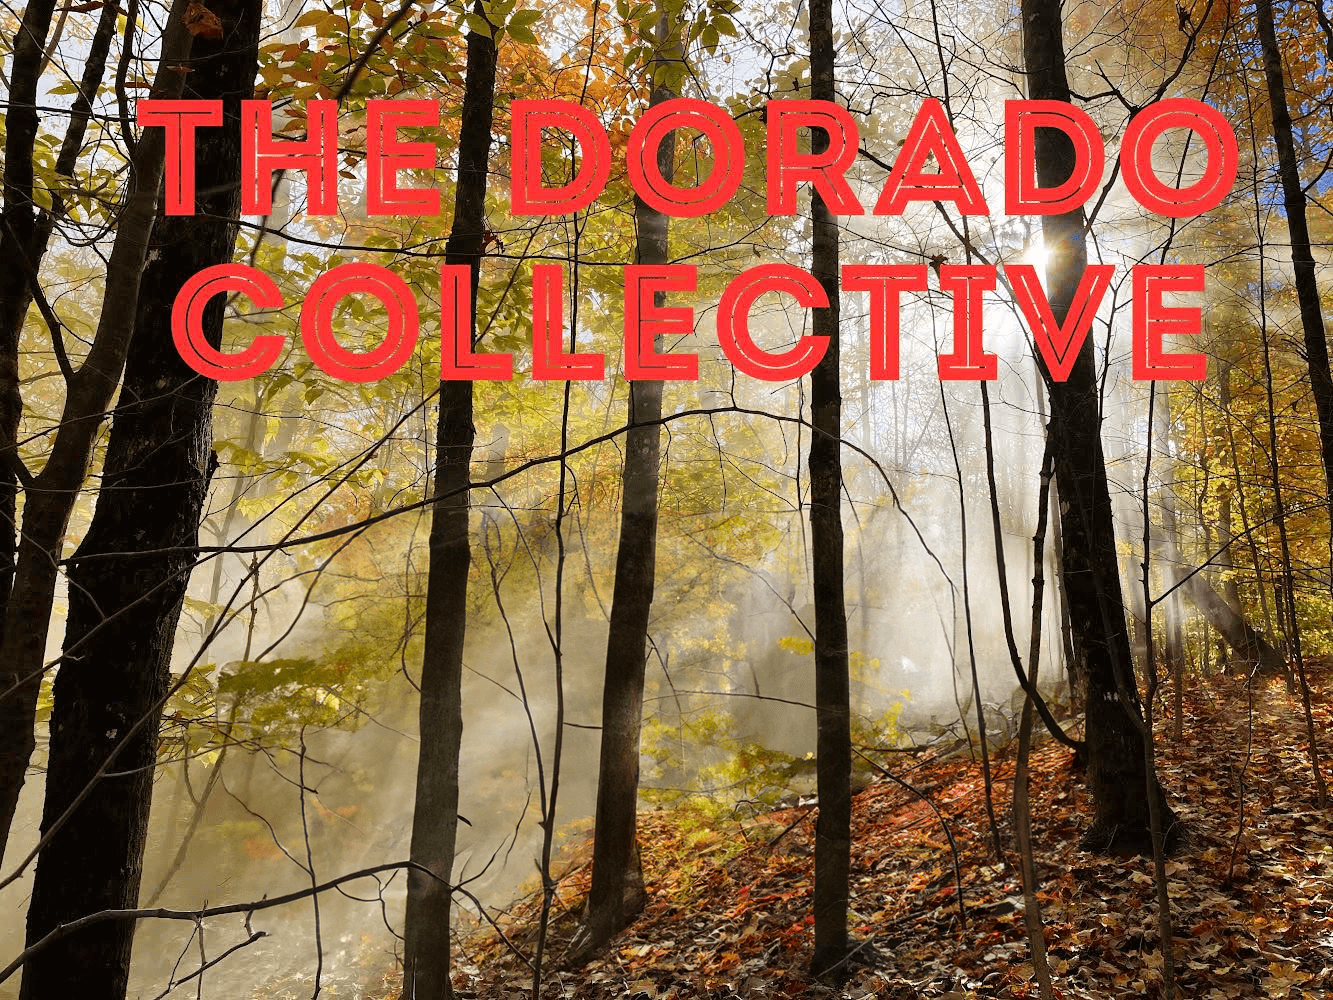 The Dorado Collective band poster